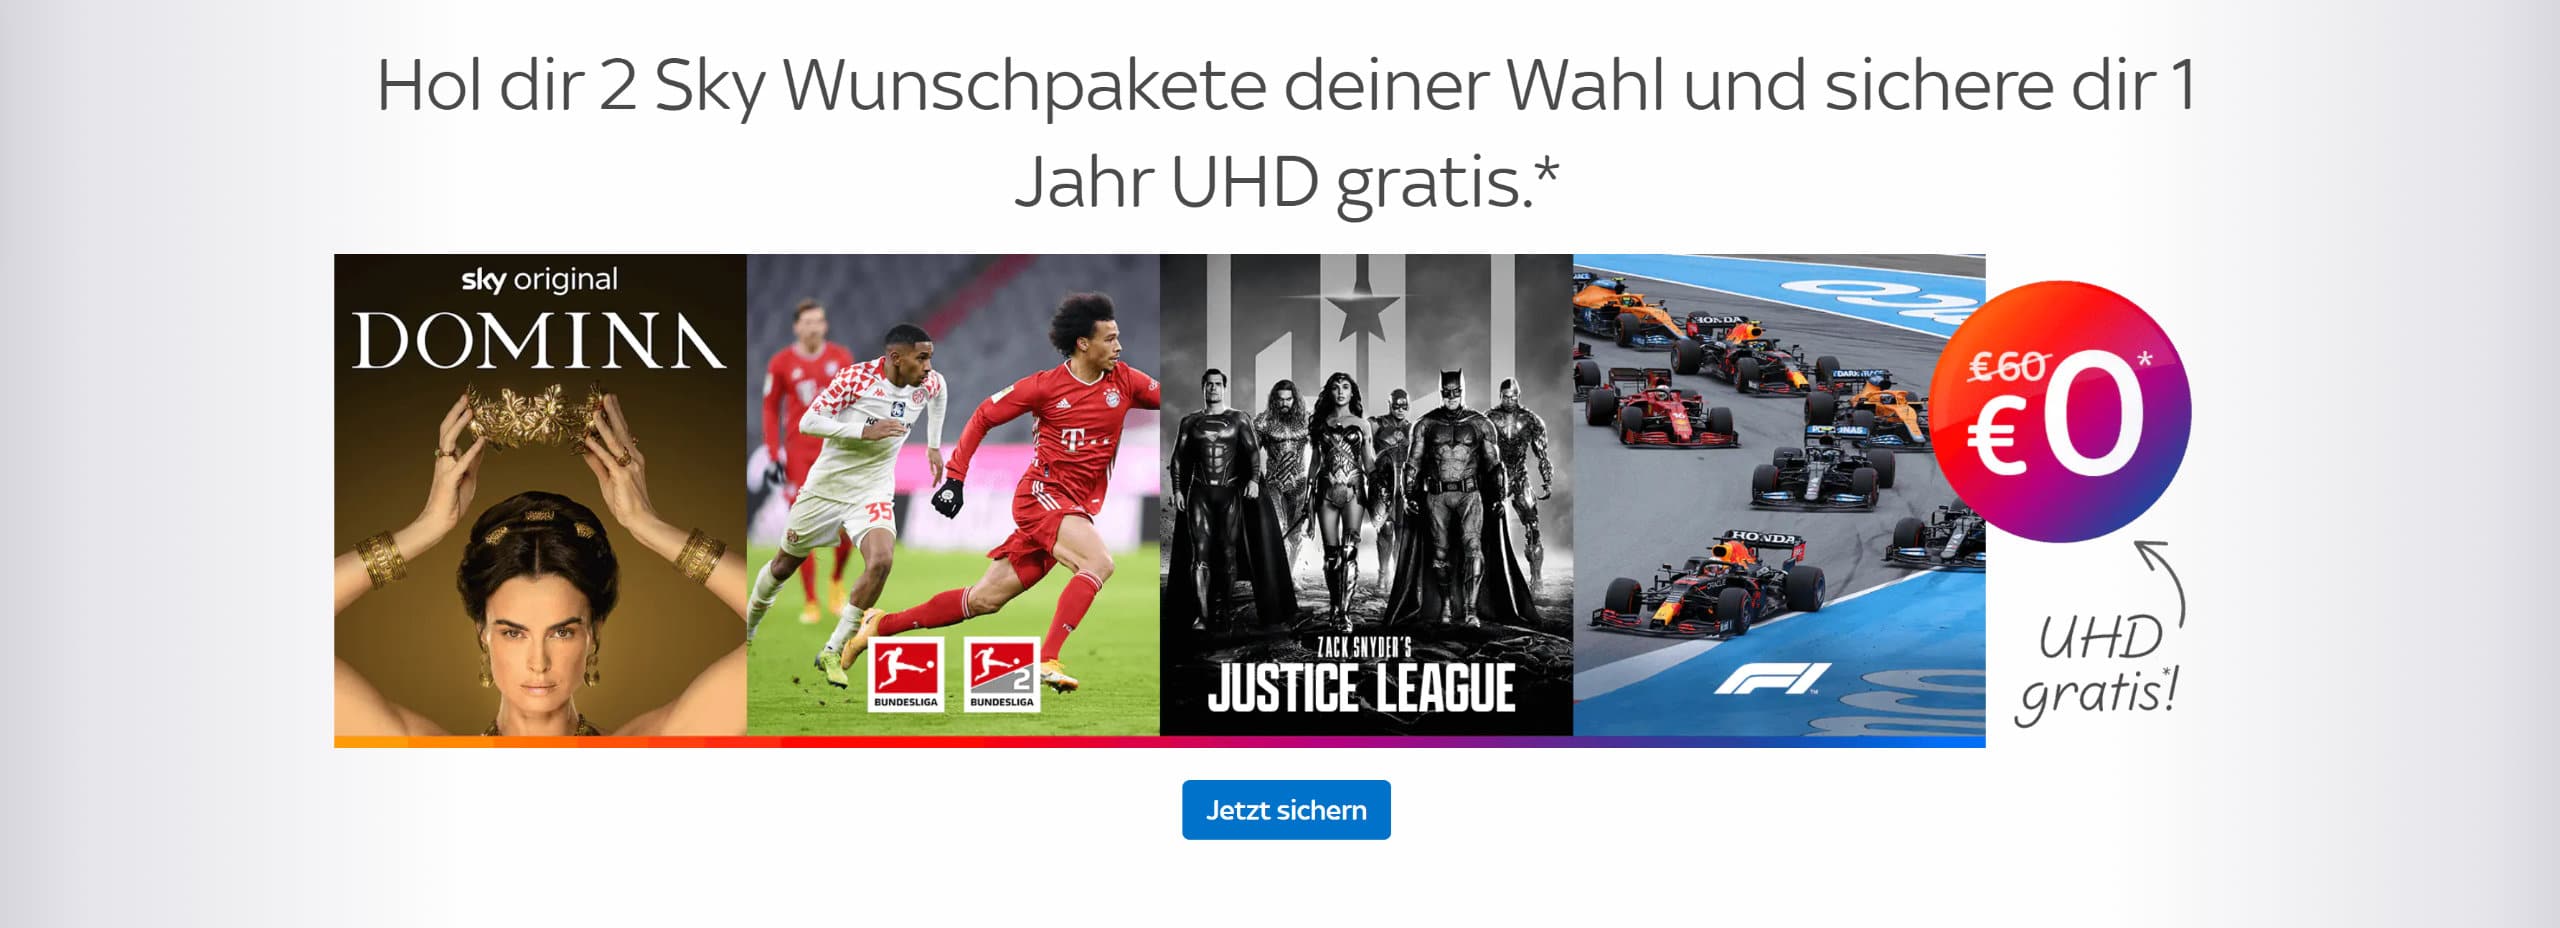 Sky Deutschland startet 4K-Angebote Ein Jahr lang UHD-Option kostenlos